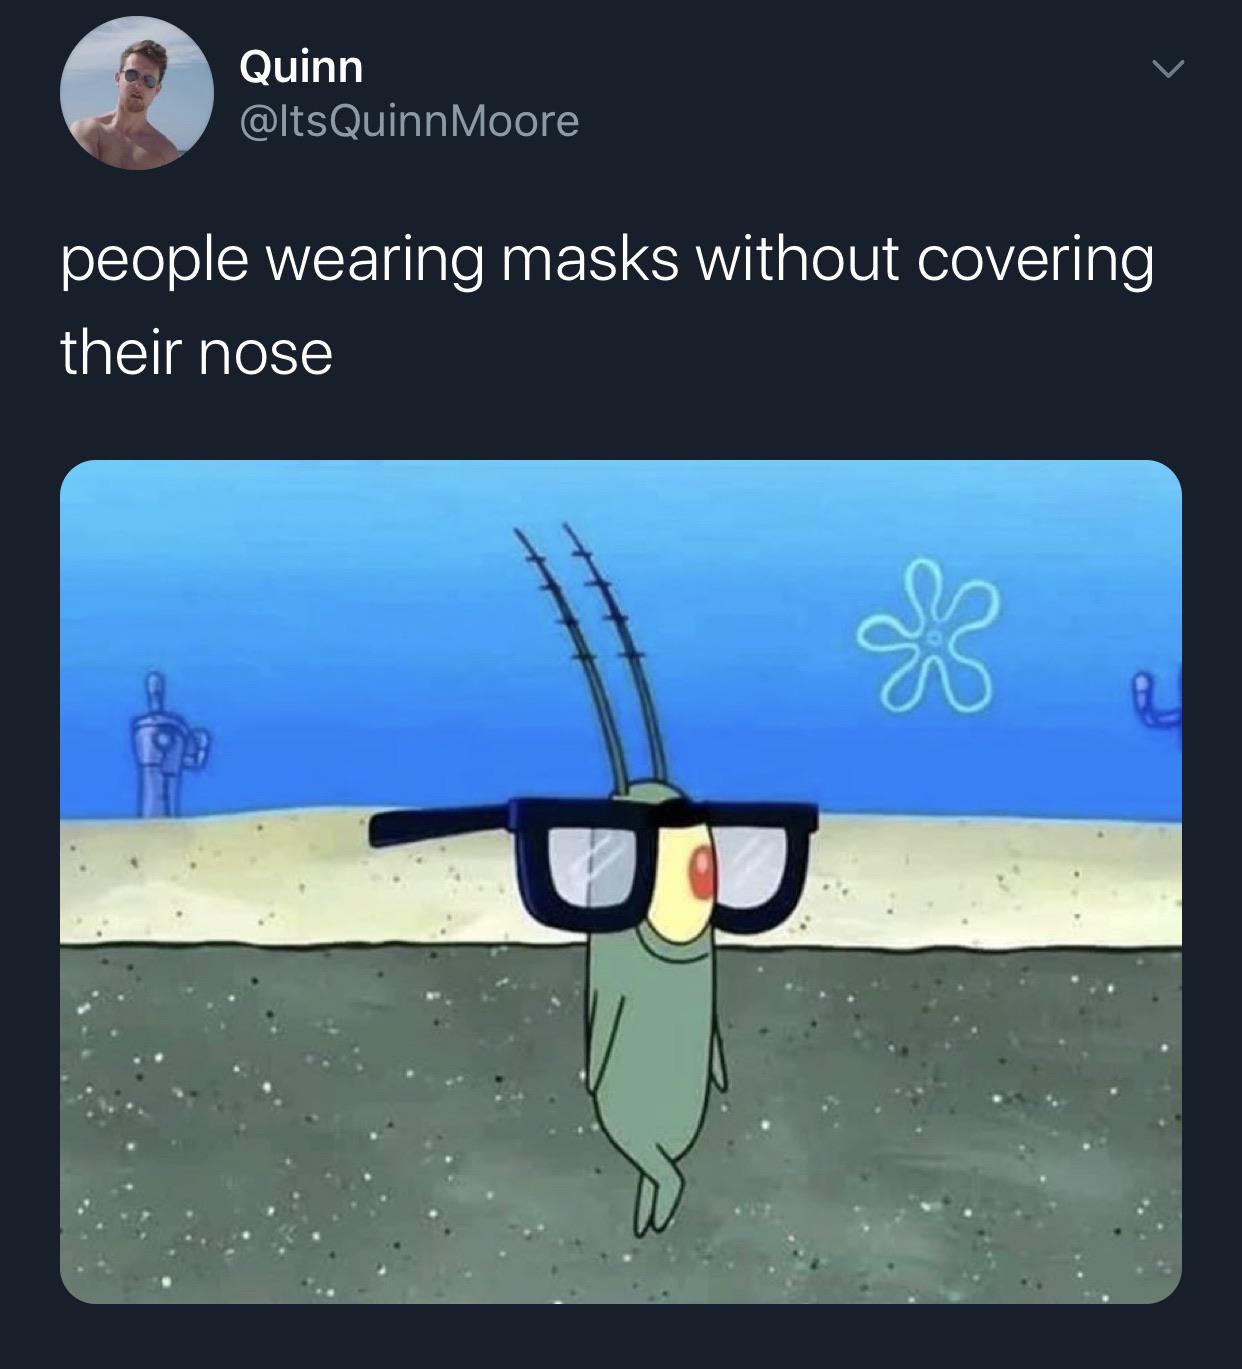 Spongebob, Ryan, Walmart, Karen Spongebob Memes Spongebob, Ryan, Walmart, Karen text: Quinn @ltsQuinnMoore people wearing masks without covering their nose 